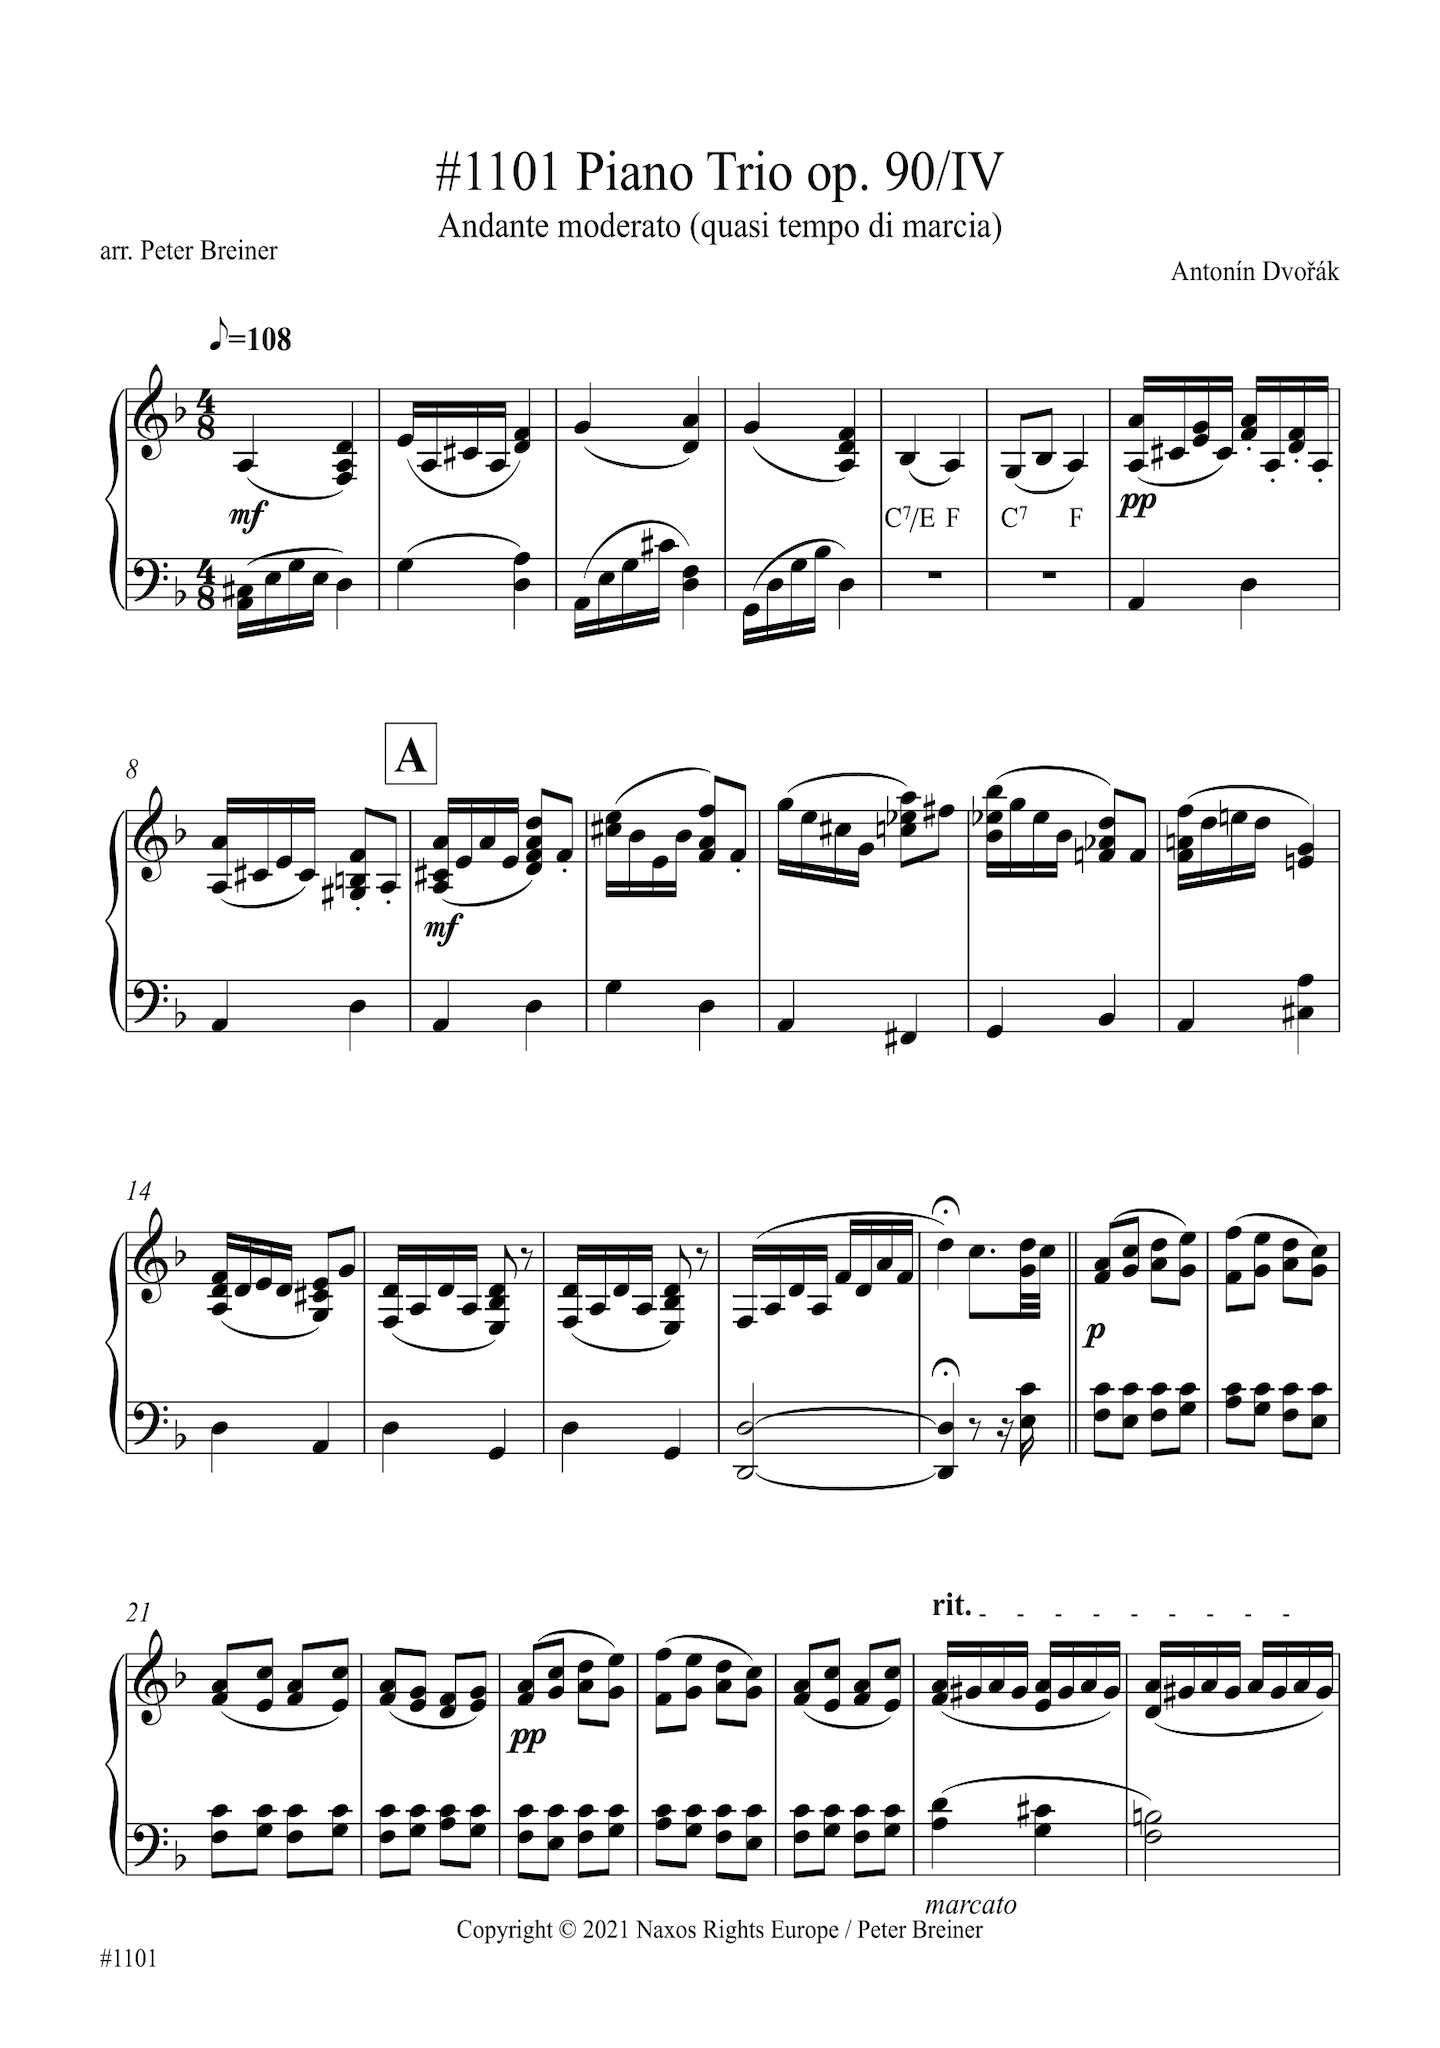 Antonín Dvořák: Andante moderato (quasi tempo di marcia), Movt. IV from Piano Trio No. 4 in E Minor (Dumky) (arranged for piano by Peter Breiner) (PB162)